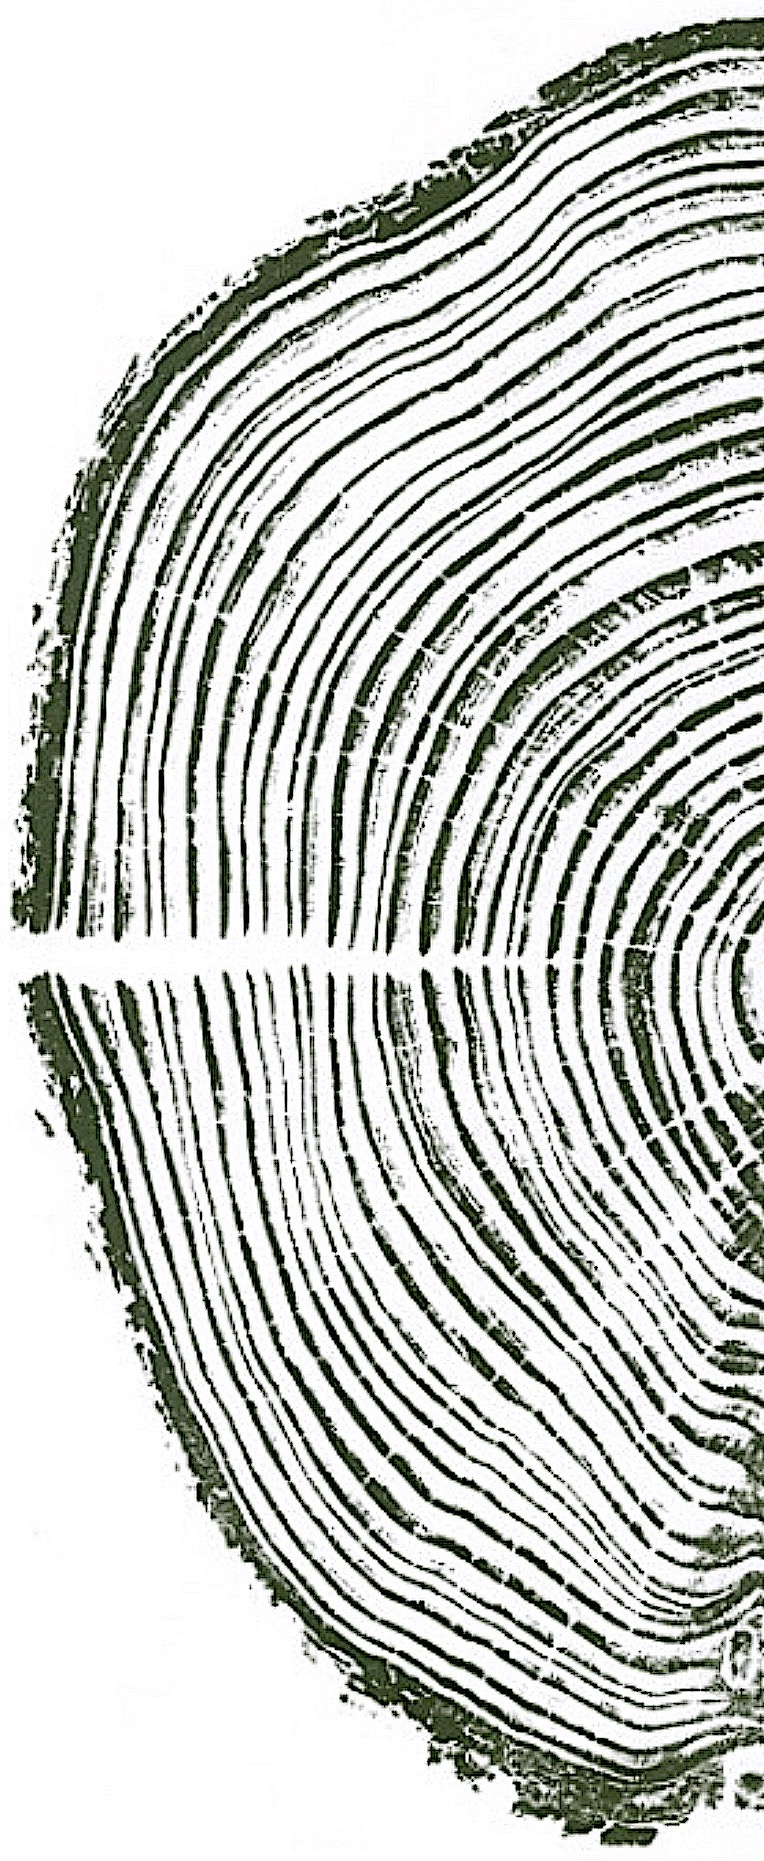 tree ring image